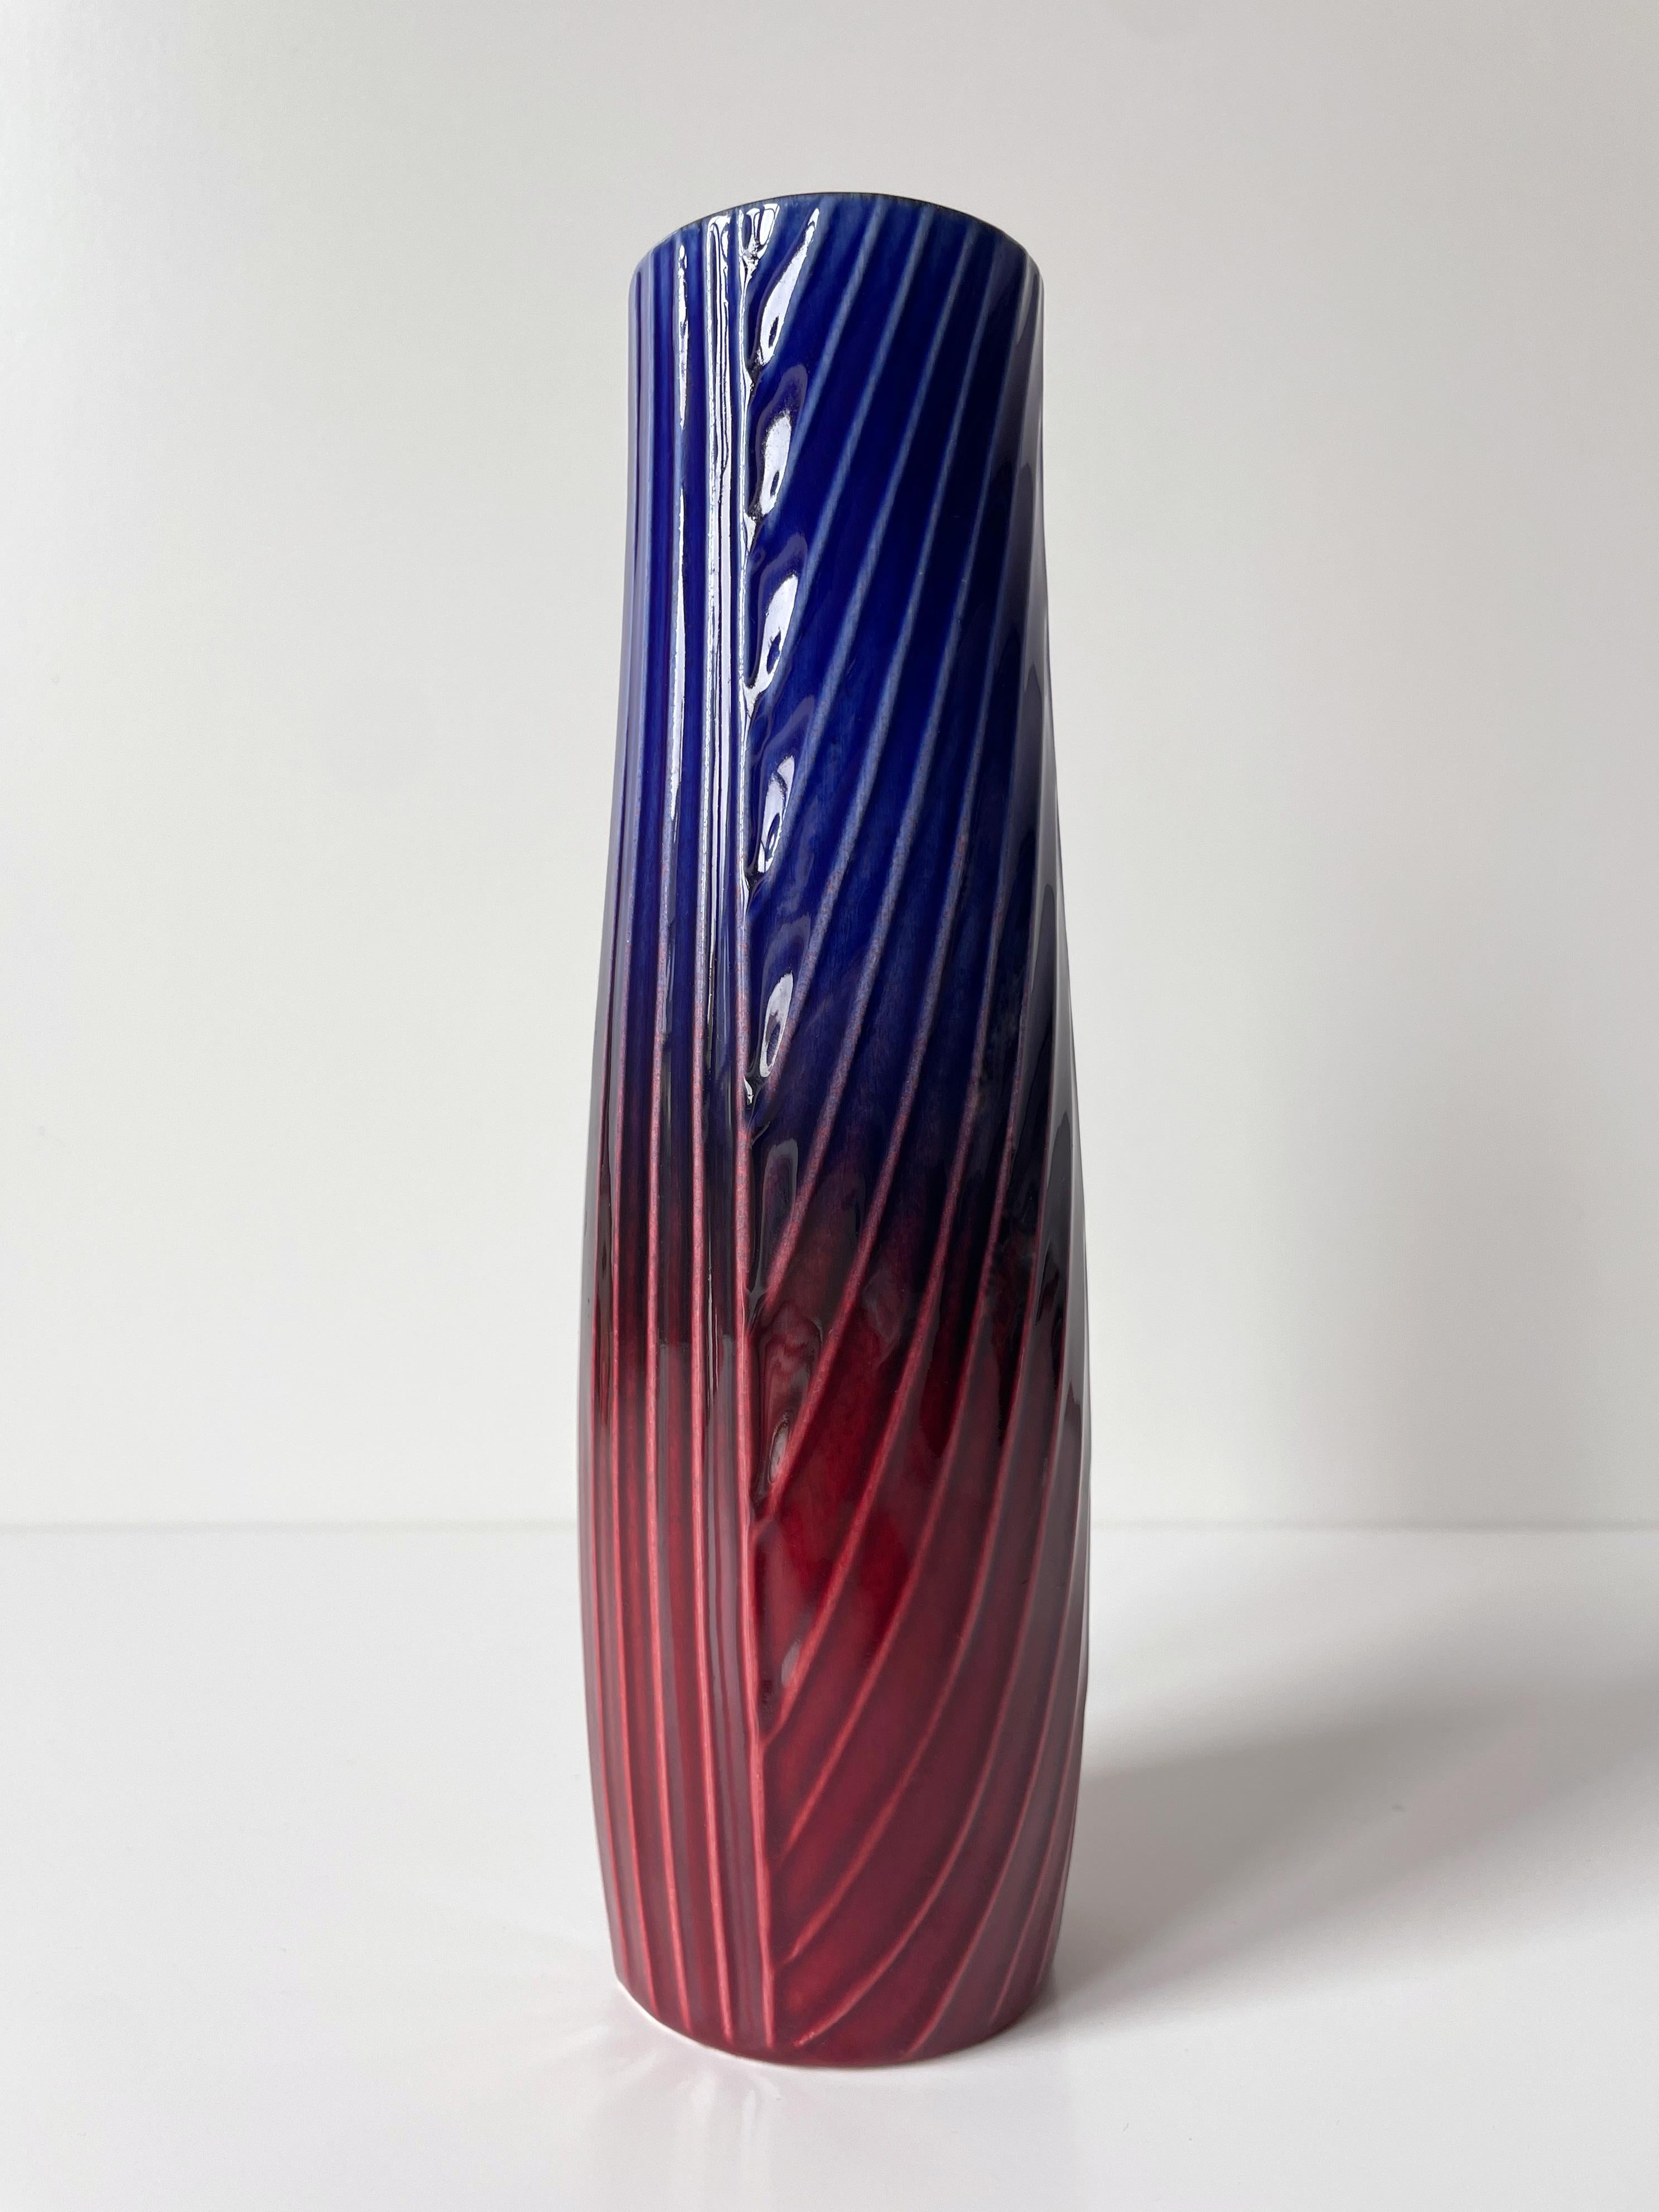 Vase élancé de forme cylindrique en grès avec une glaçure brillante en bleu cobalt, violet profond et rouge bordeaux sur des motifs linéaires en relief. L'artiste Carl-Harry Stålhane (1920-1990) a conçu la série Sparaxis - parfois appelée Anémone -